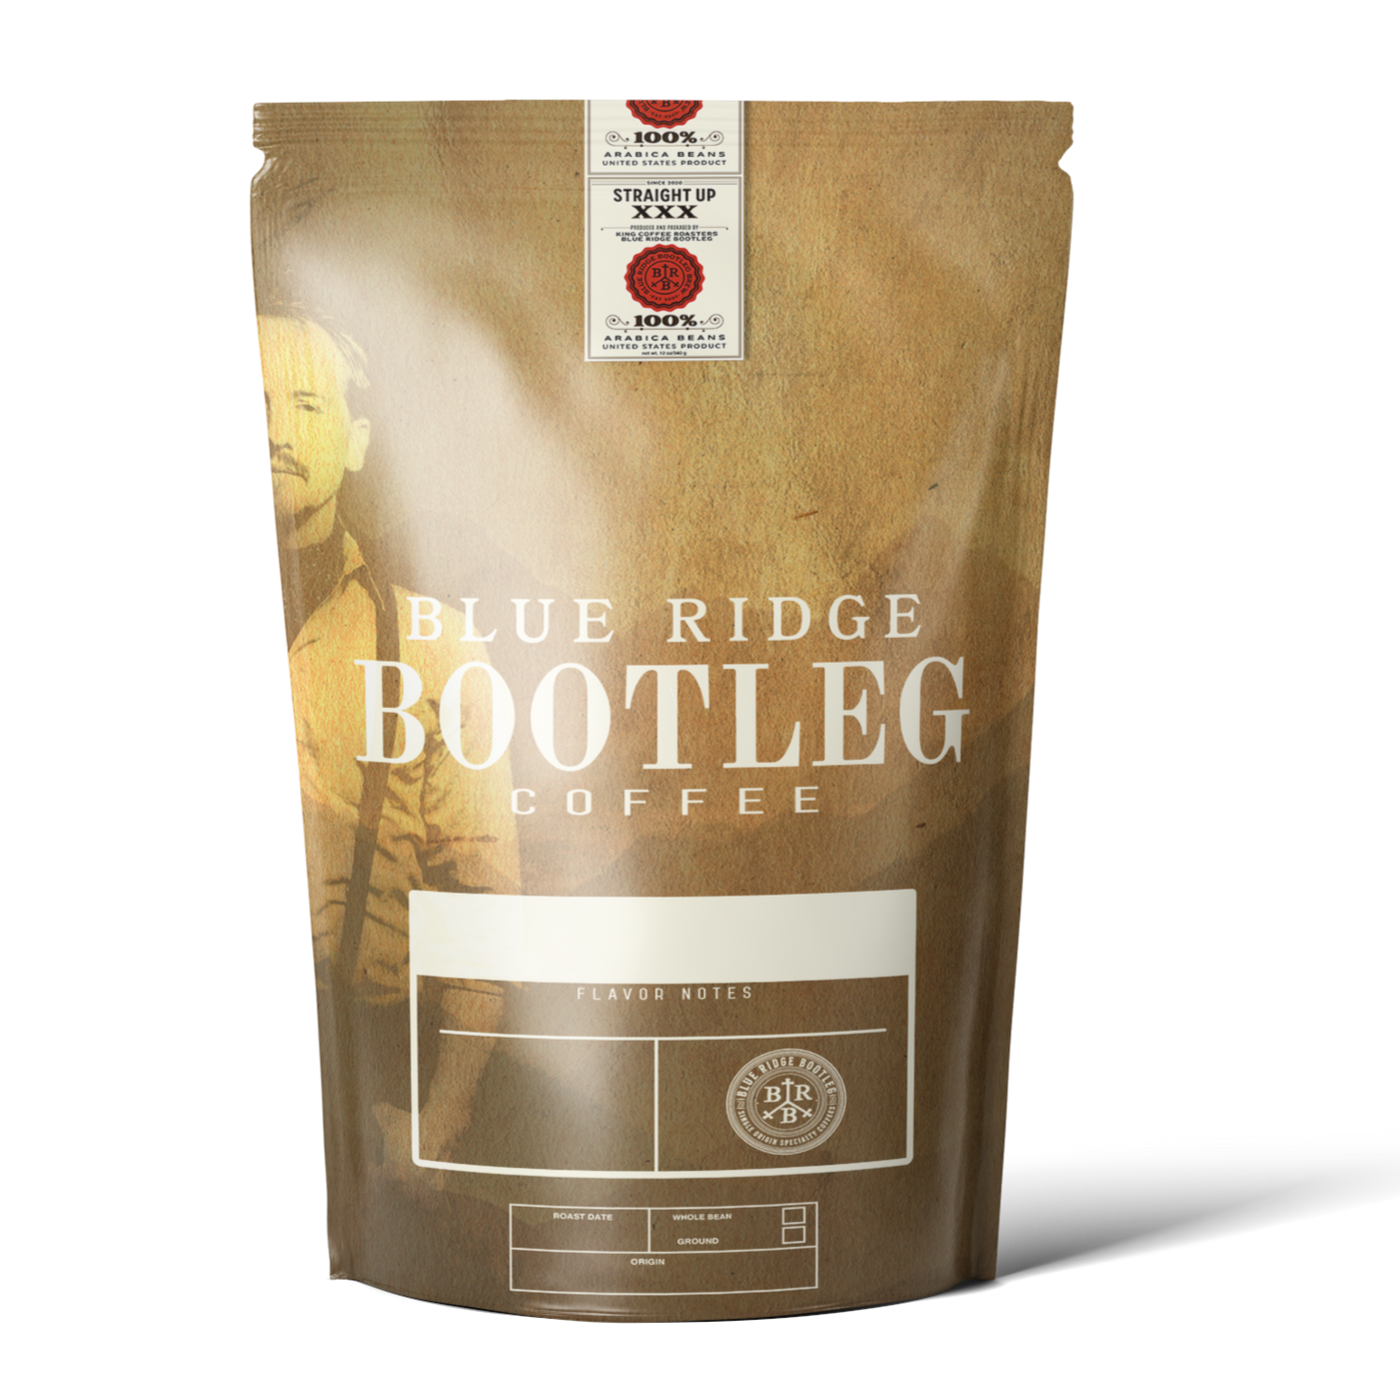 BLUE RIDGE BOOTLEG ROASTER'S CHOICE COFFEE 1 lb + (Fair Trade/Organic)